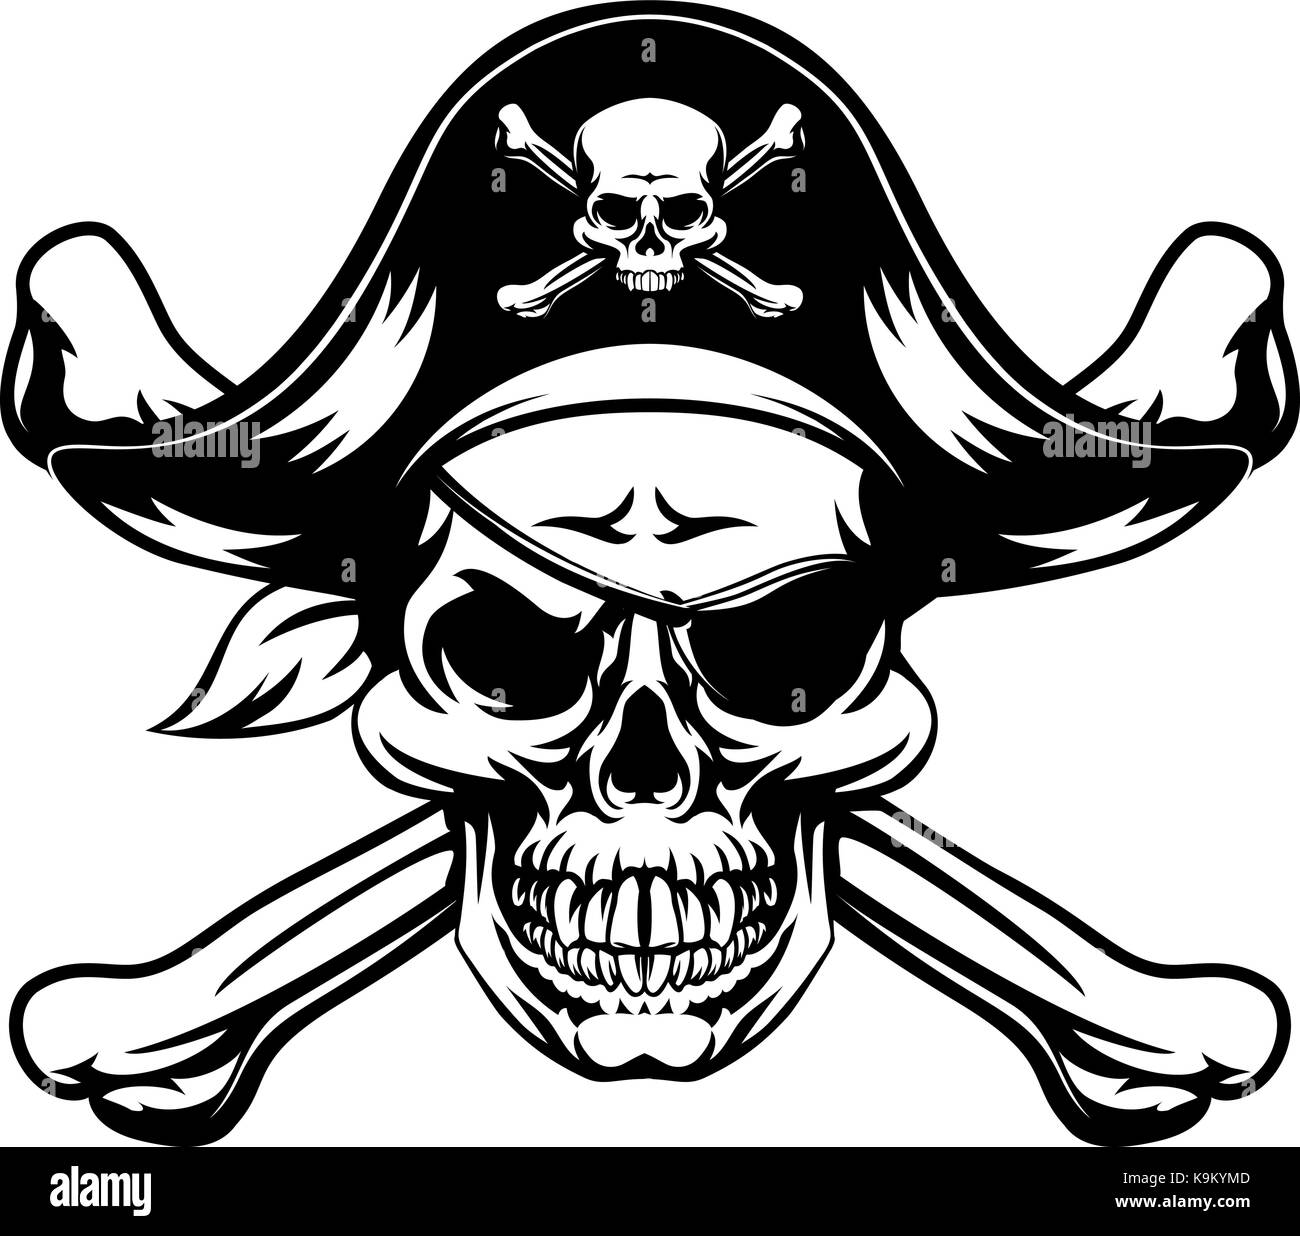 Vector de ilustración de logotipo de calavera de piratas